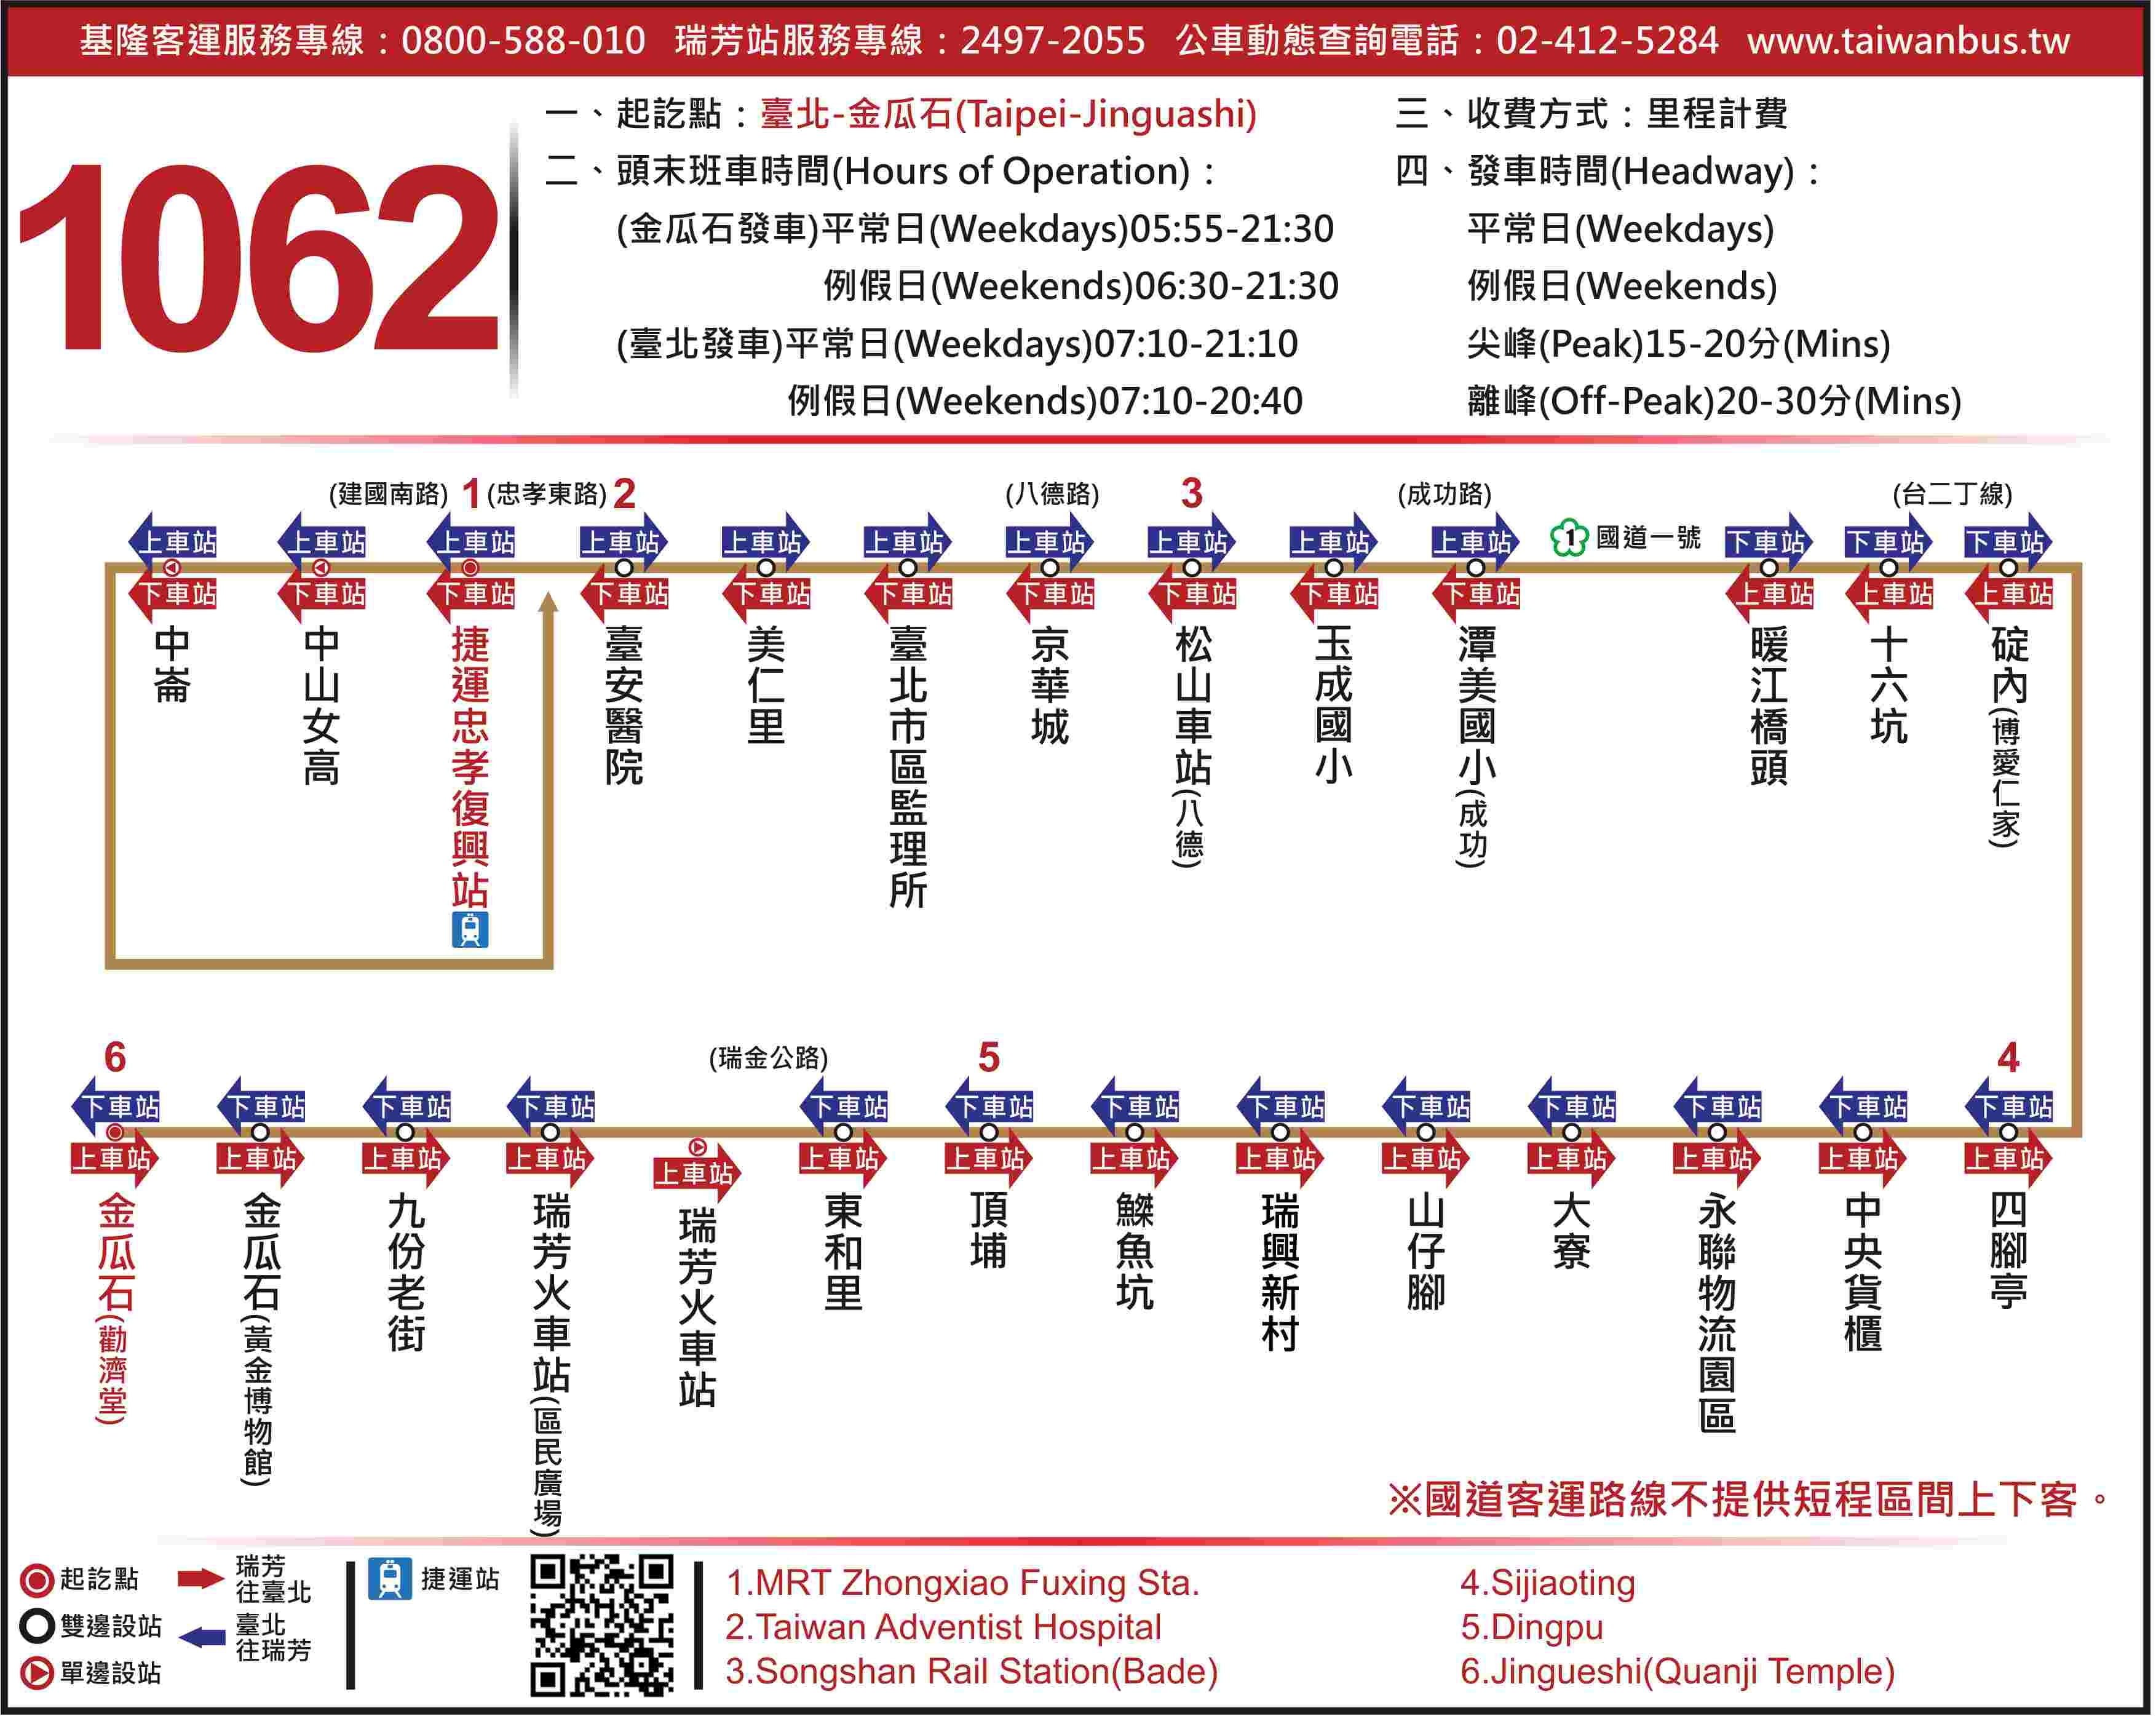 1062，臺北，瑞芳，九份，金瓜石，國道客運詳細交通上下車路線。